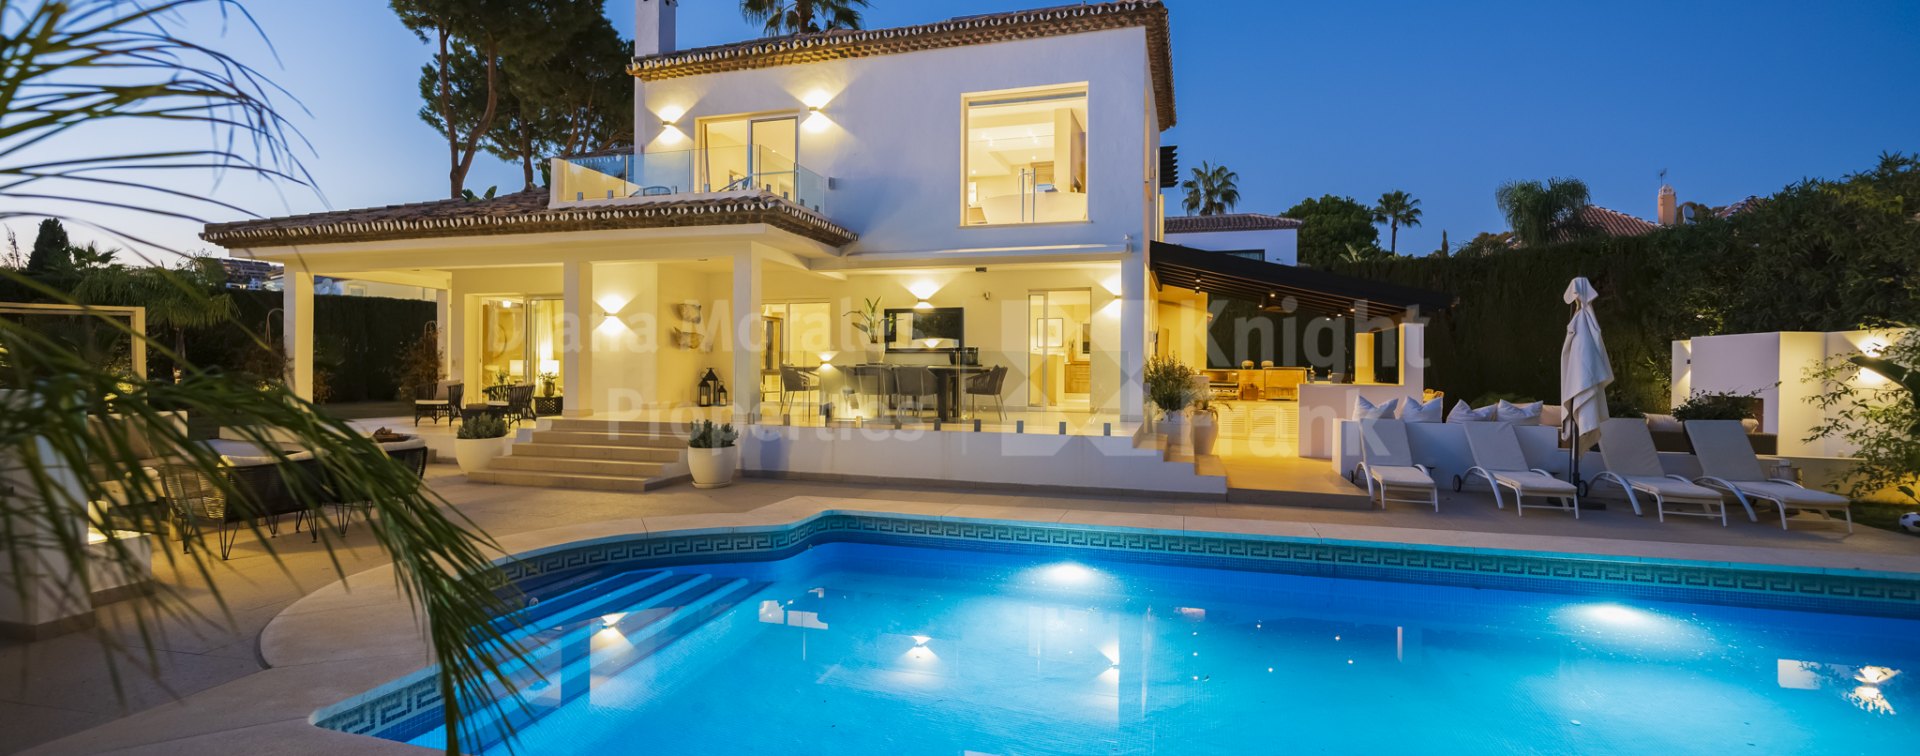 Marbella Country Club, Casa en urbanización vallada cerca del golf